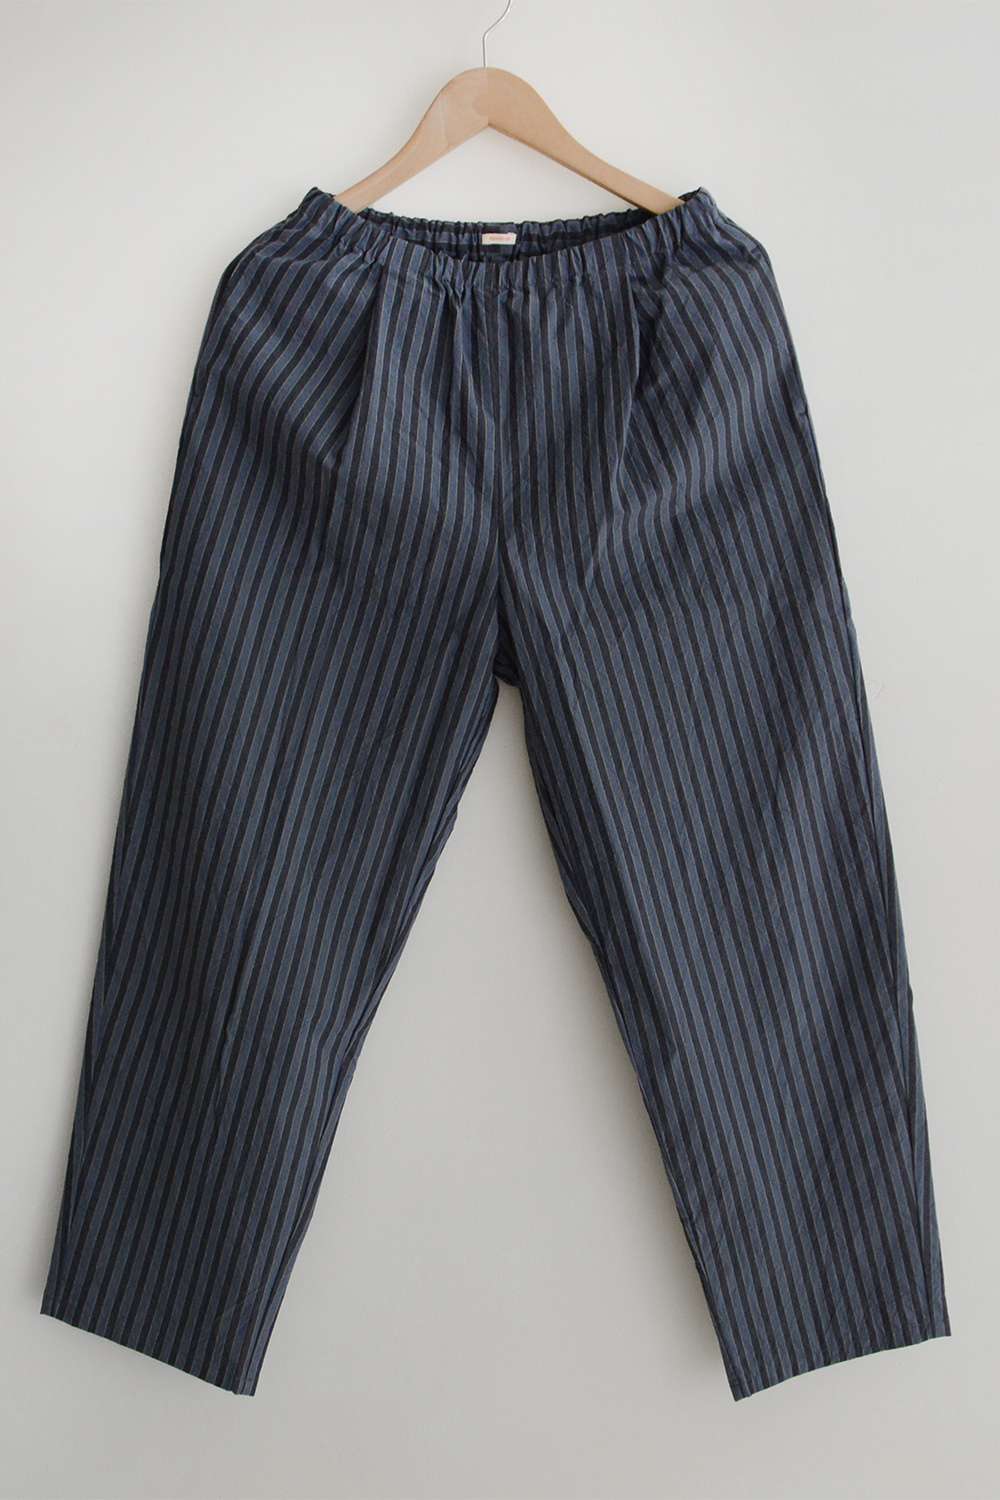 apuntob ash blue stripe cotton pants